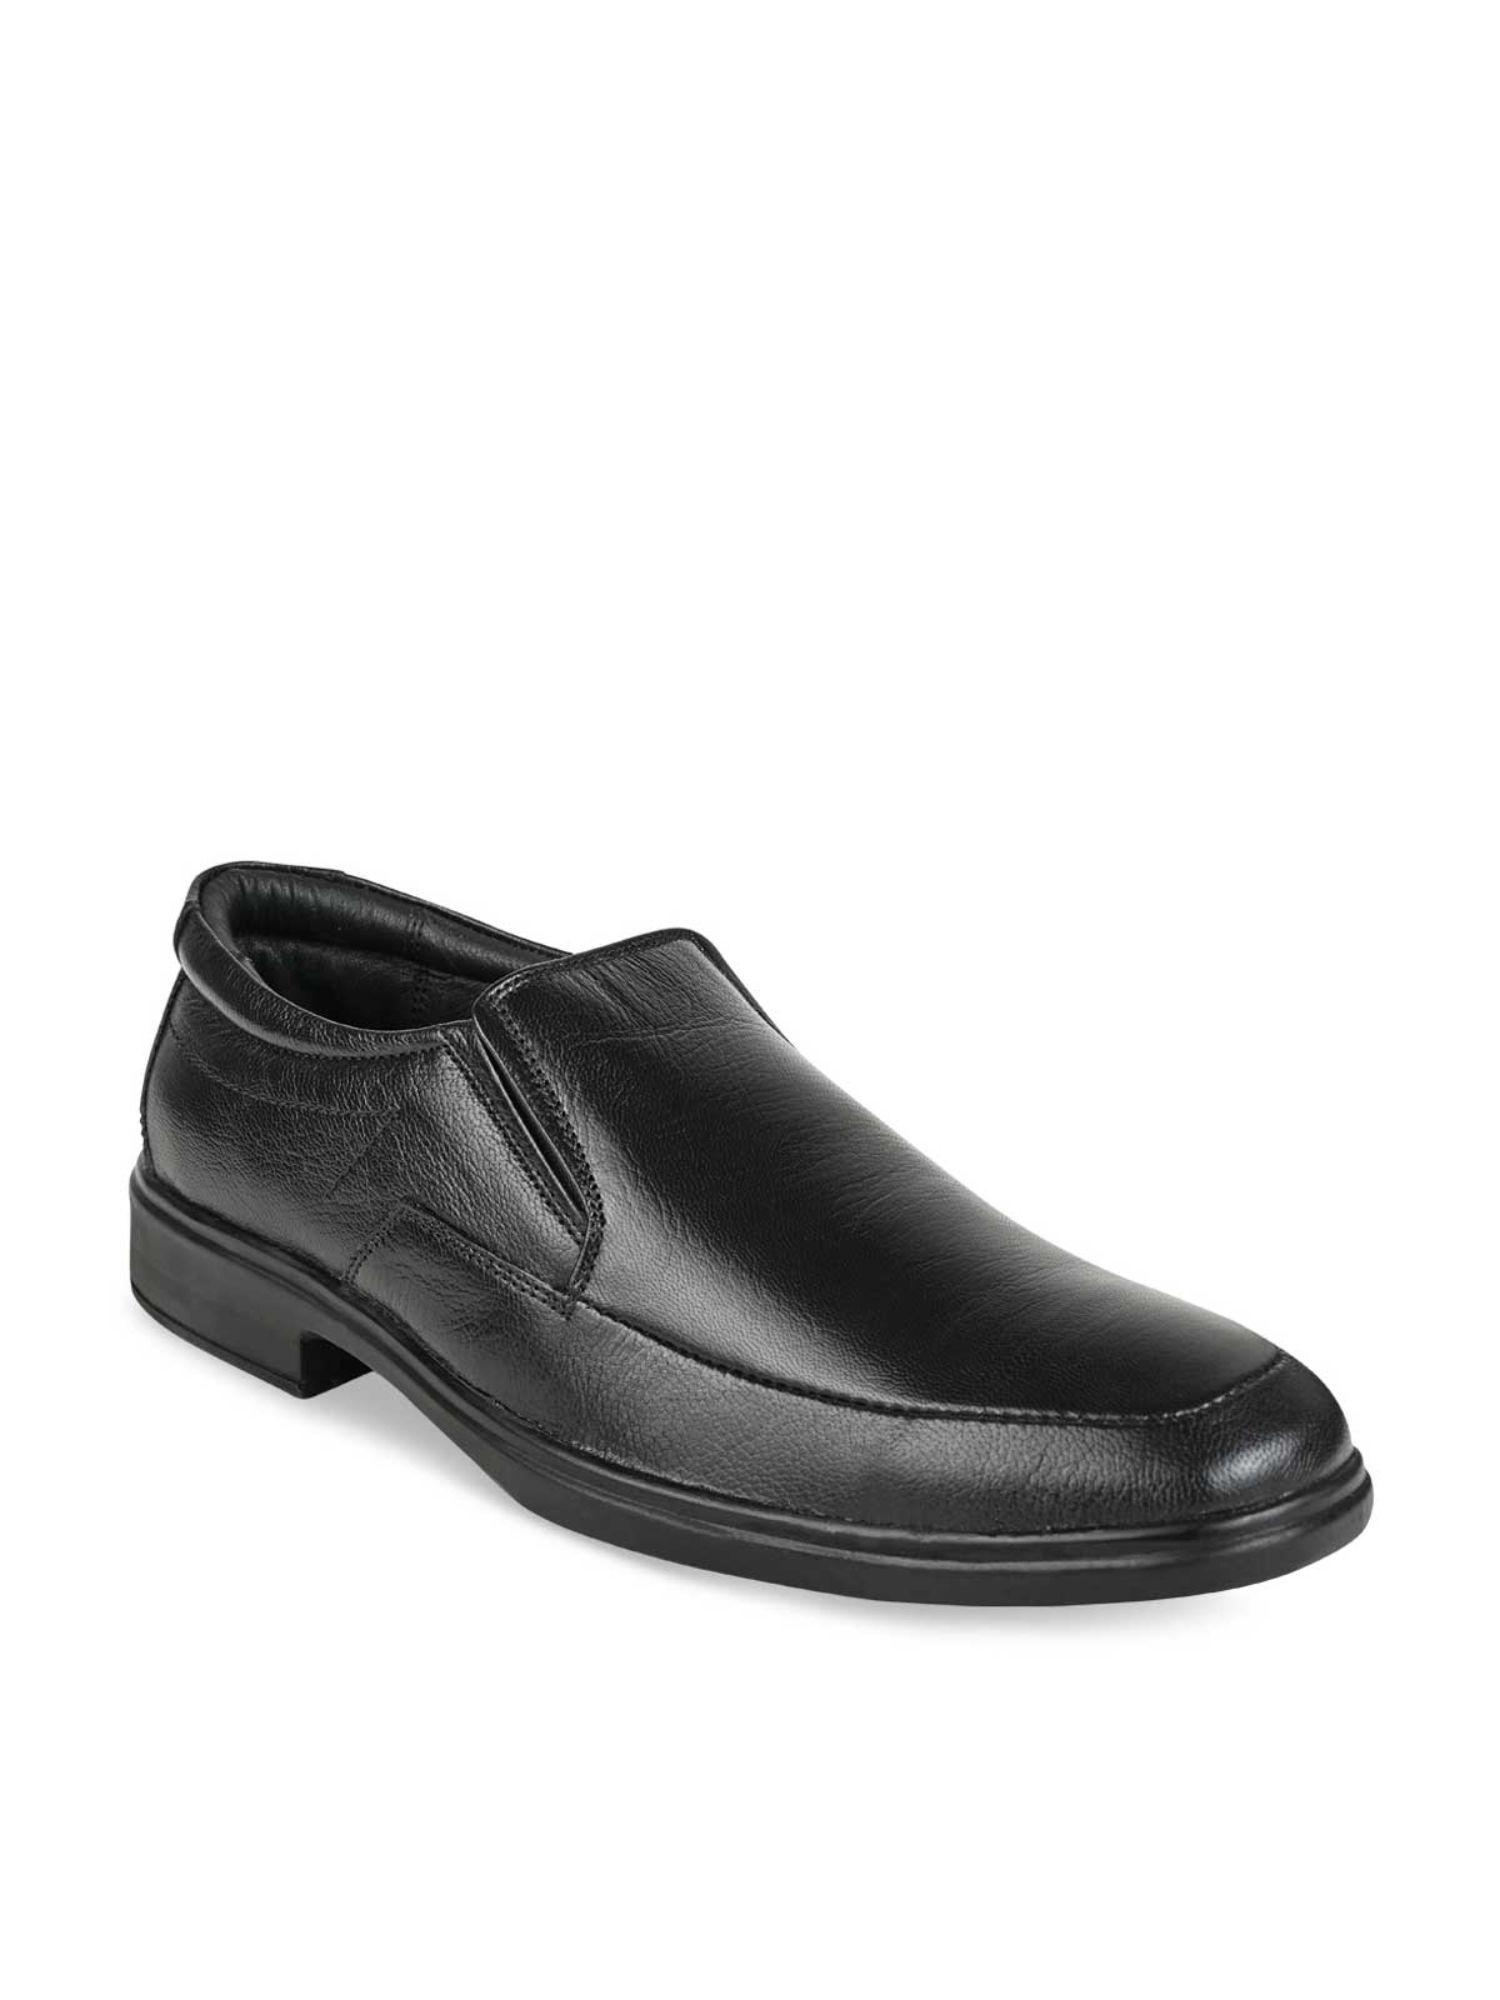 men-black-solid-leather-slip-on-shoes